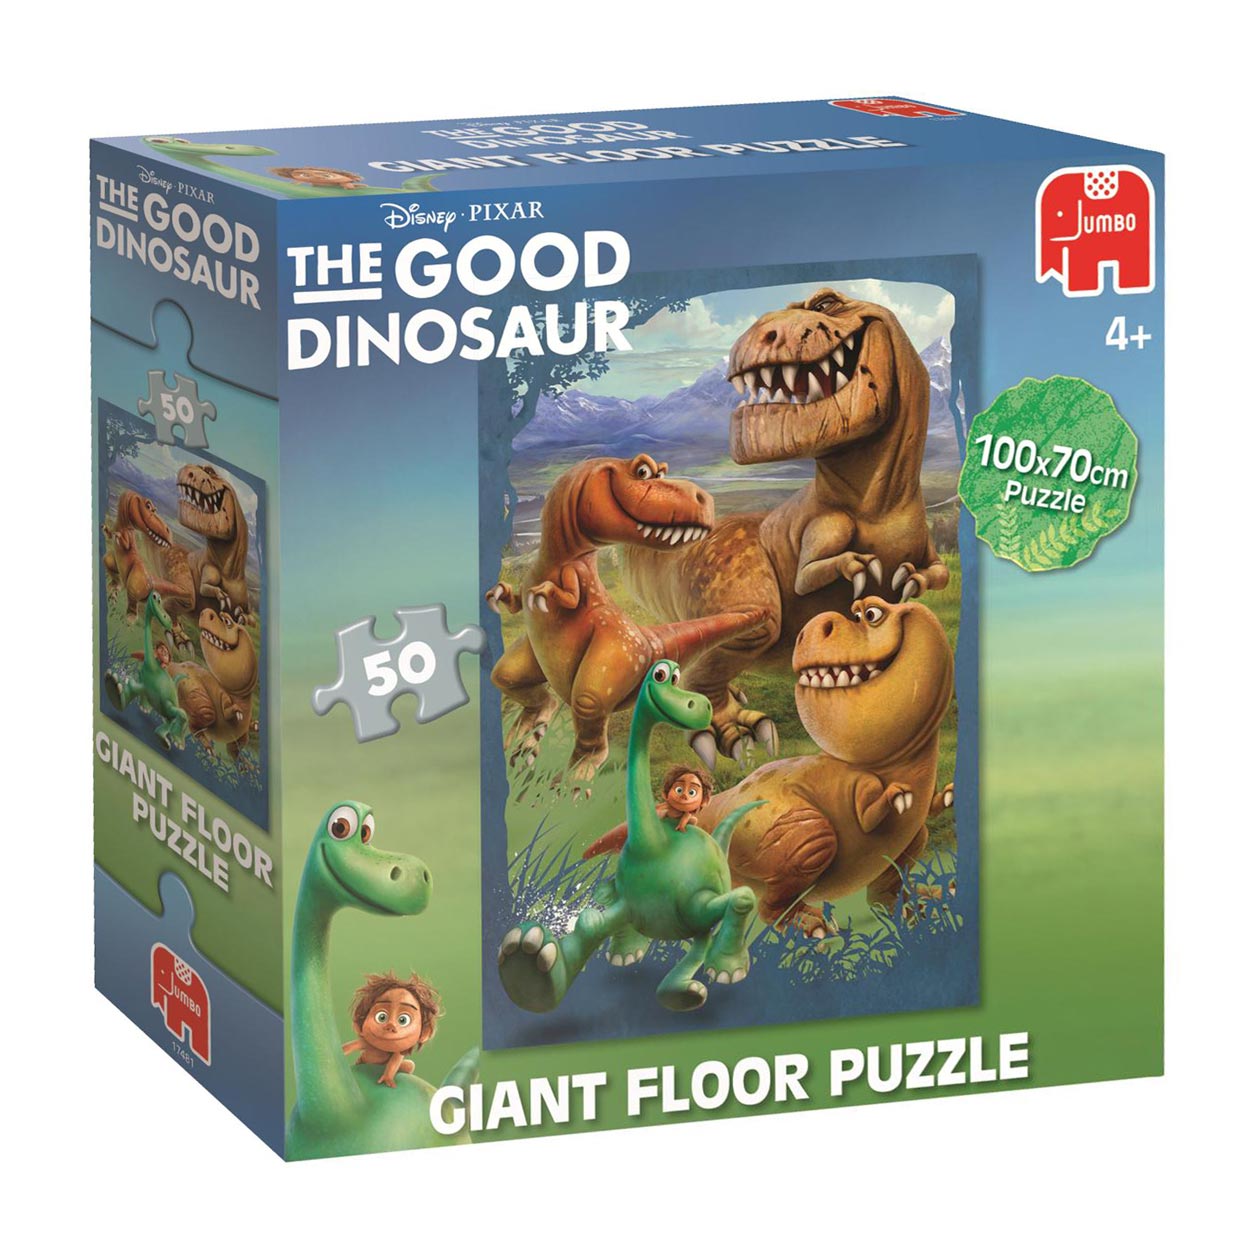 Geslagen vrachtwagen Integraal ongeduldig The Good Dinosaur Grote vloerpuzzel, 50st. | Thimble Toys